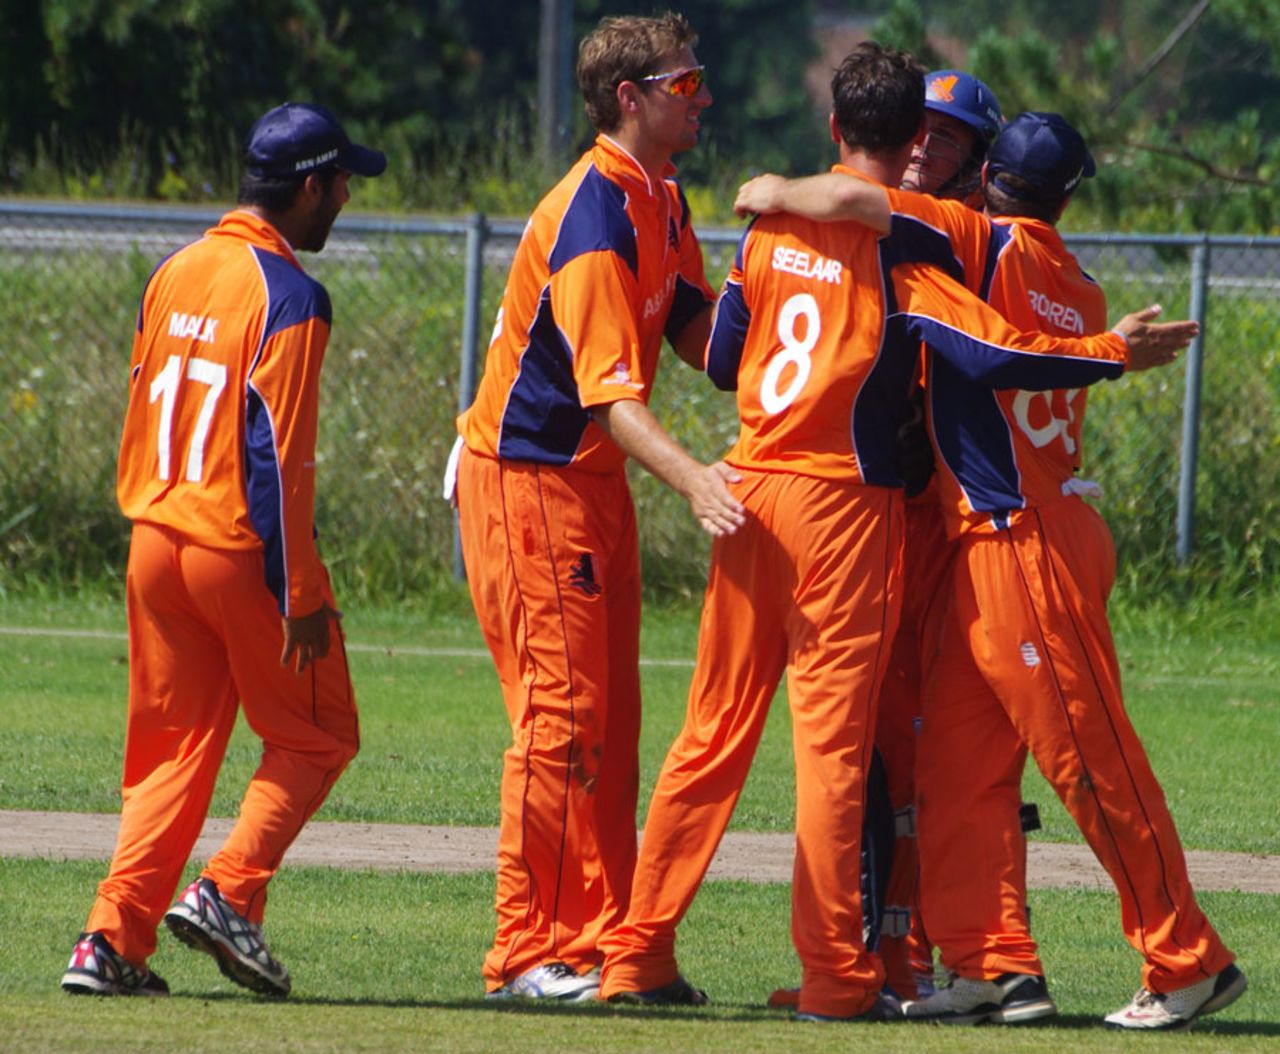 Team-mates congratulate Netherlands bowler Pieter Seelaar, Canada v Netherlands, World Cricket League Championship, King City, August 29, 2013